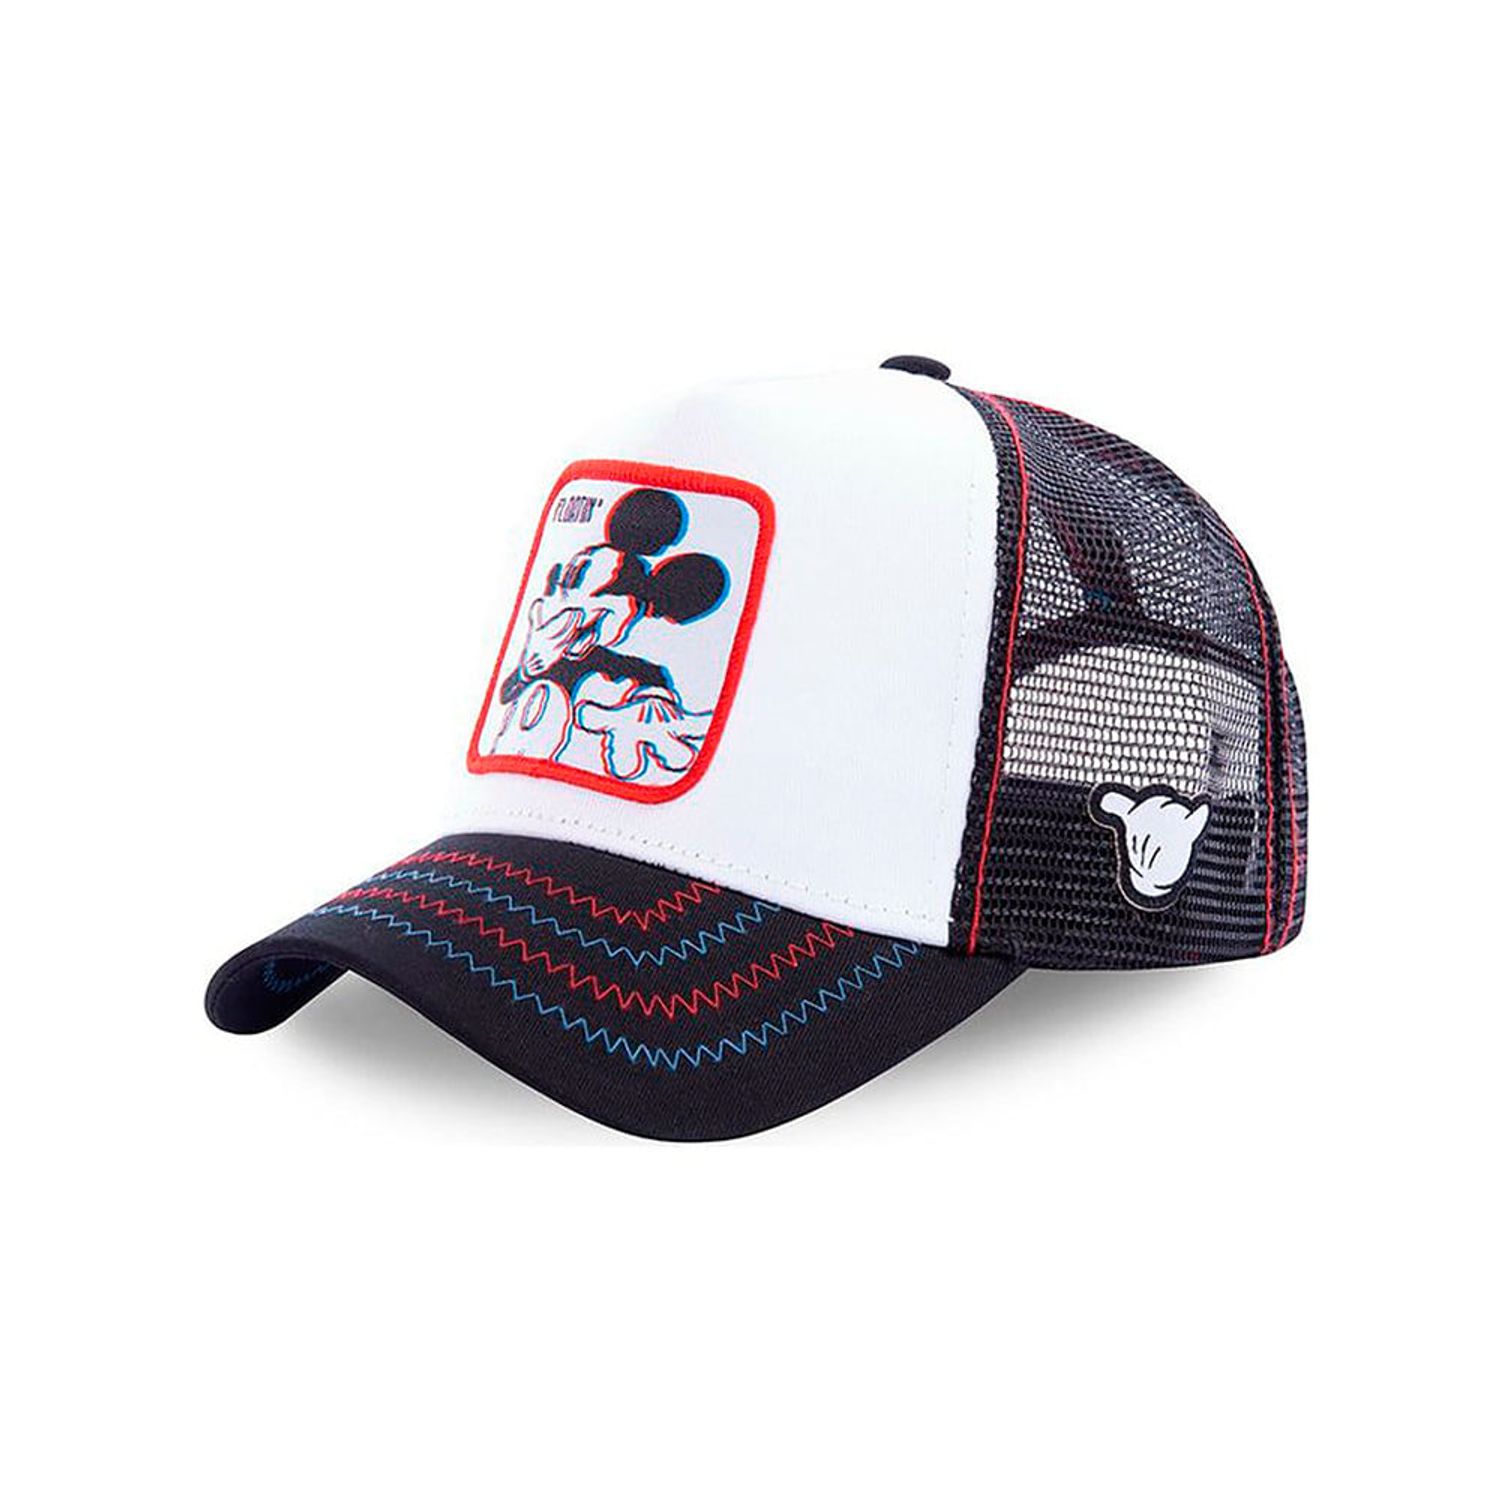 Promoción de gorras de beisbol, de gorras de beisbol a la venta, de gorras  de beisbol promocional